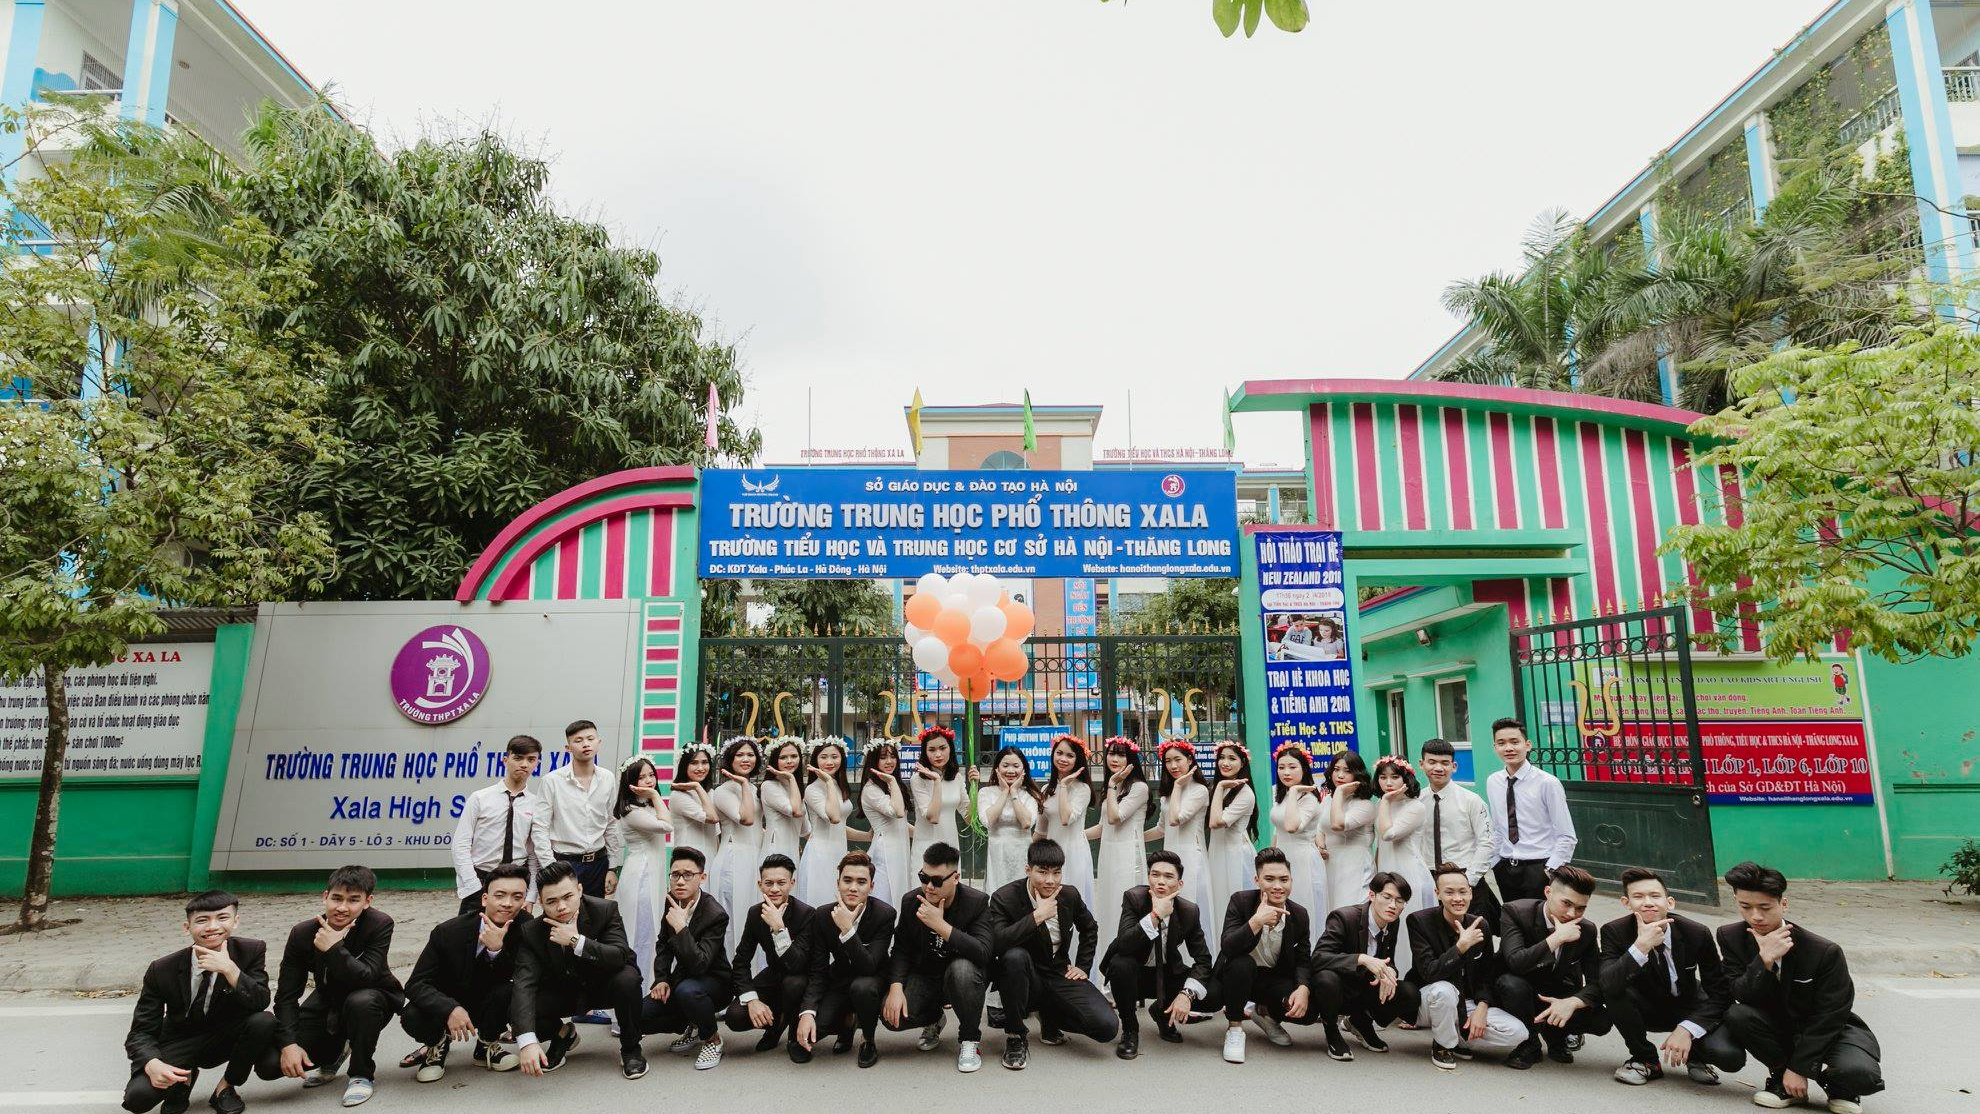 Thông tin địa chỉ Trường THPT Xa La, quận Hà Đông, thành phố Hà Nội